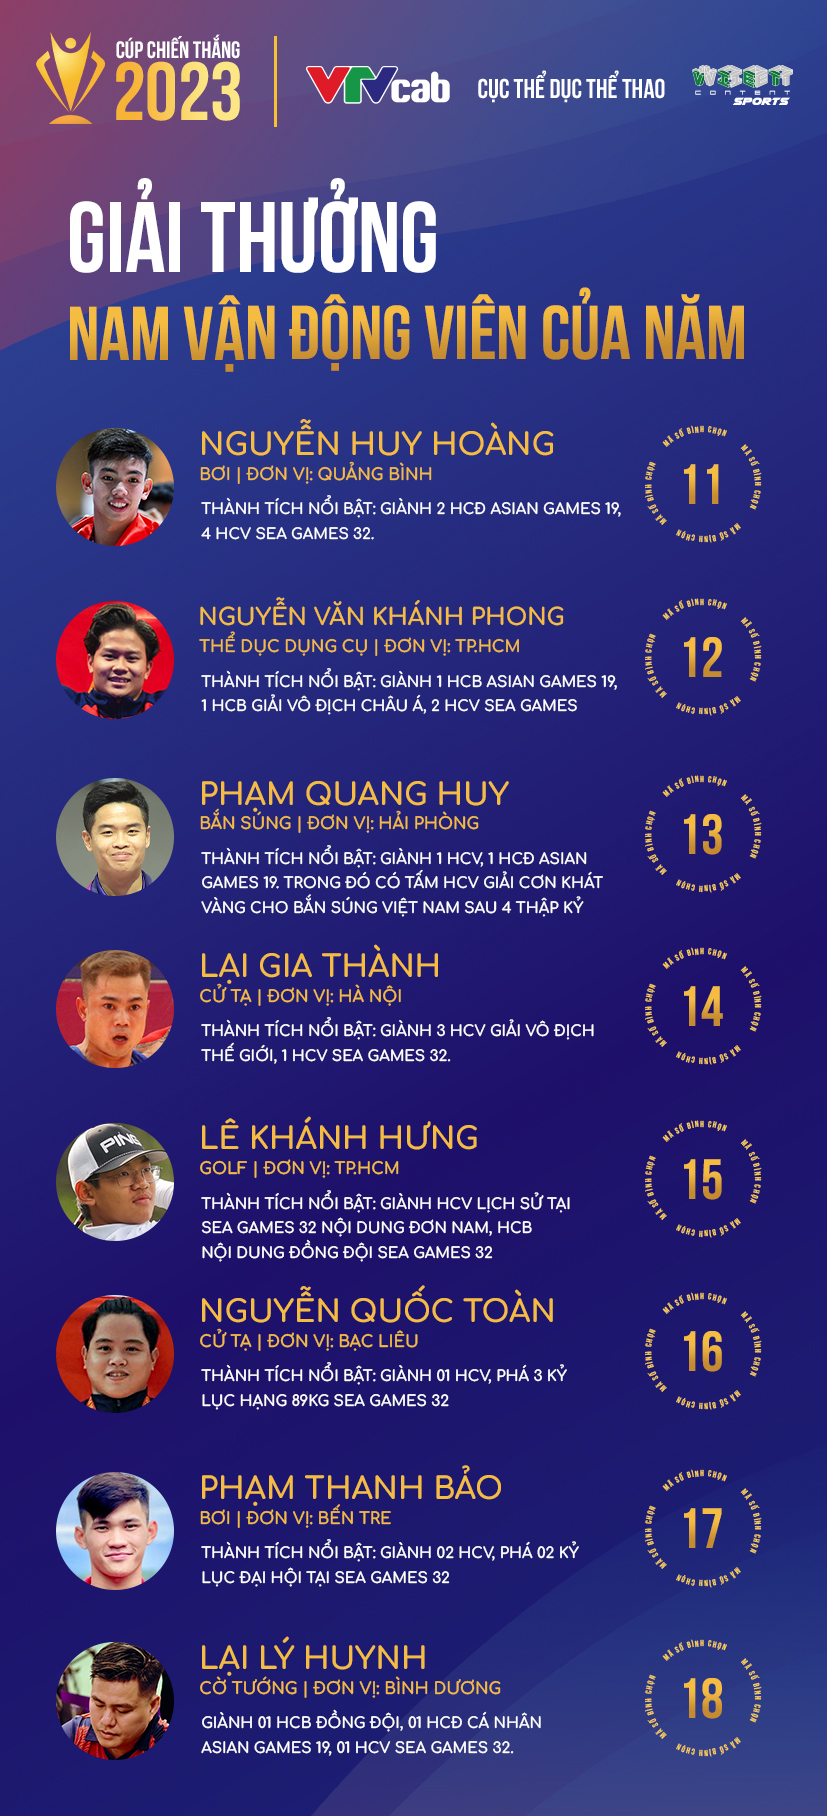 Khởi động bình chọn Cúp Chiến thắng 2023, tôn vinh các tập thể, cá nhân xuất sắc của thể thao Việt Nam ảnh 2